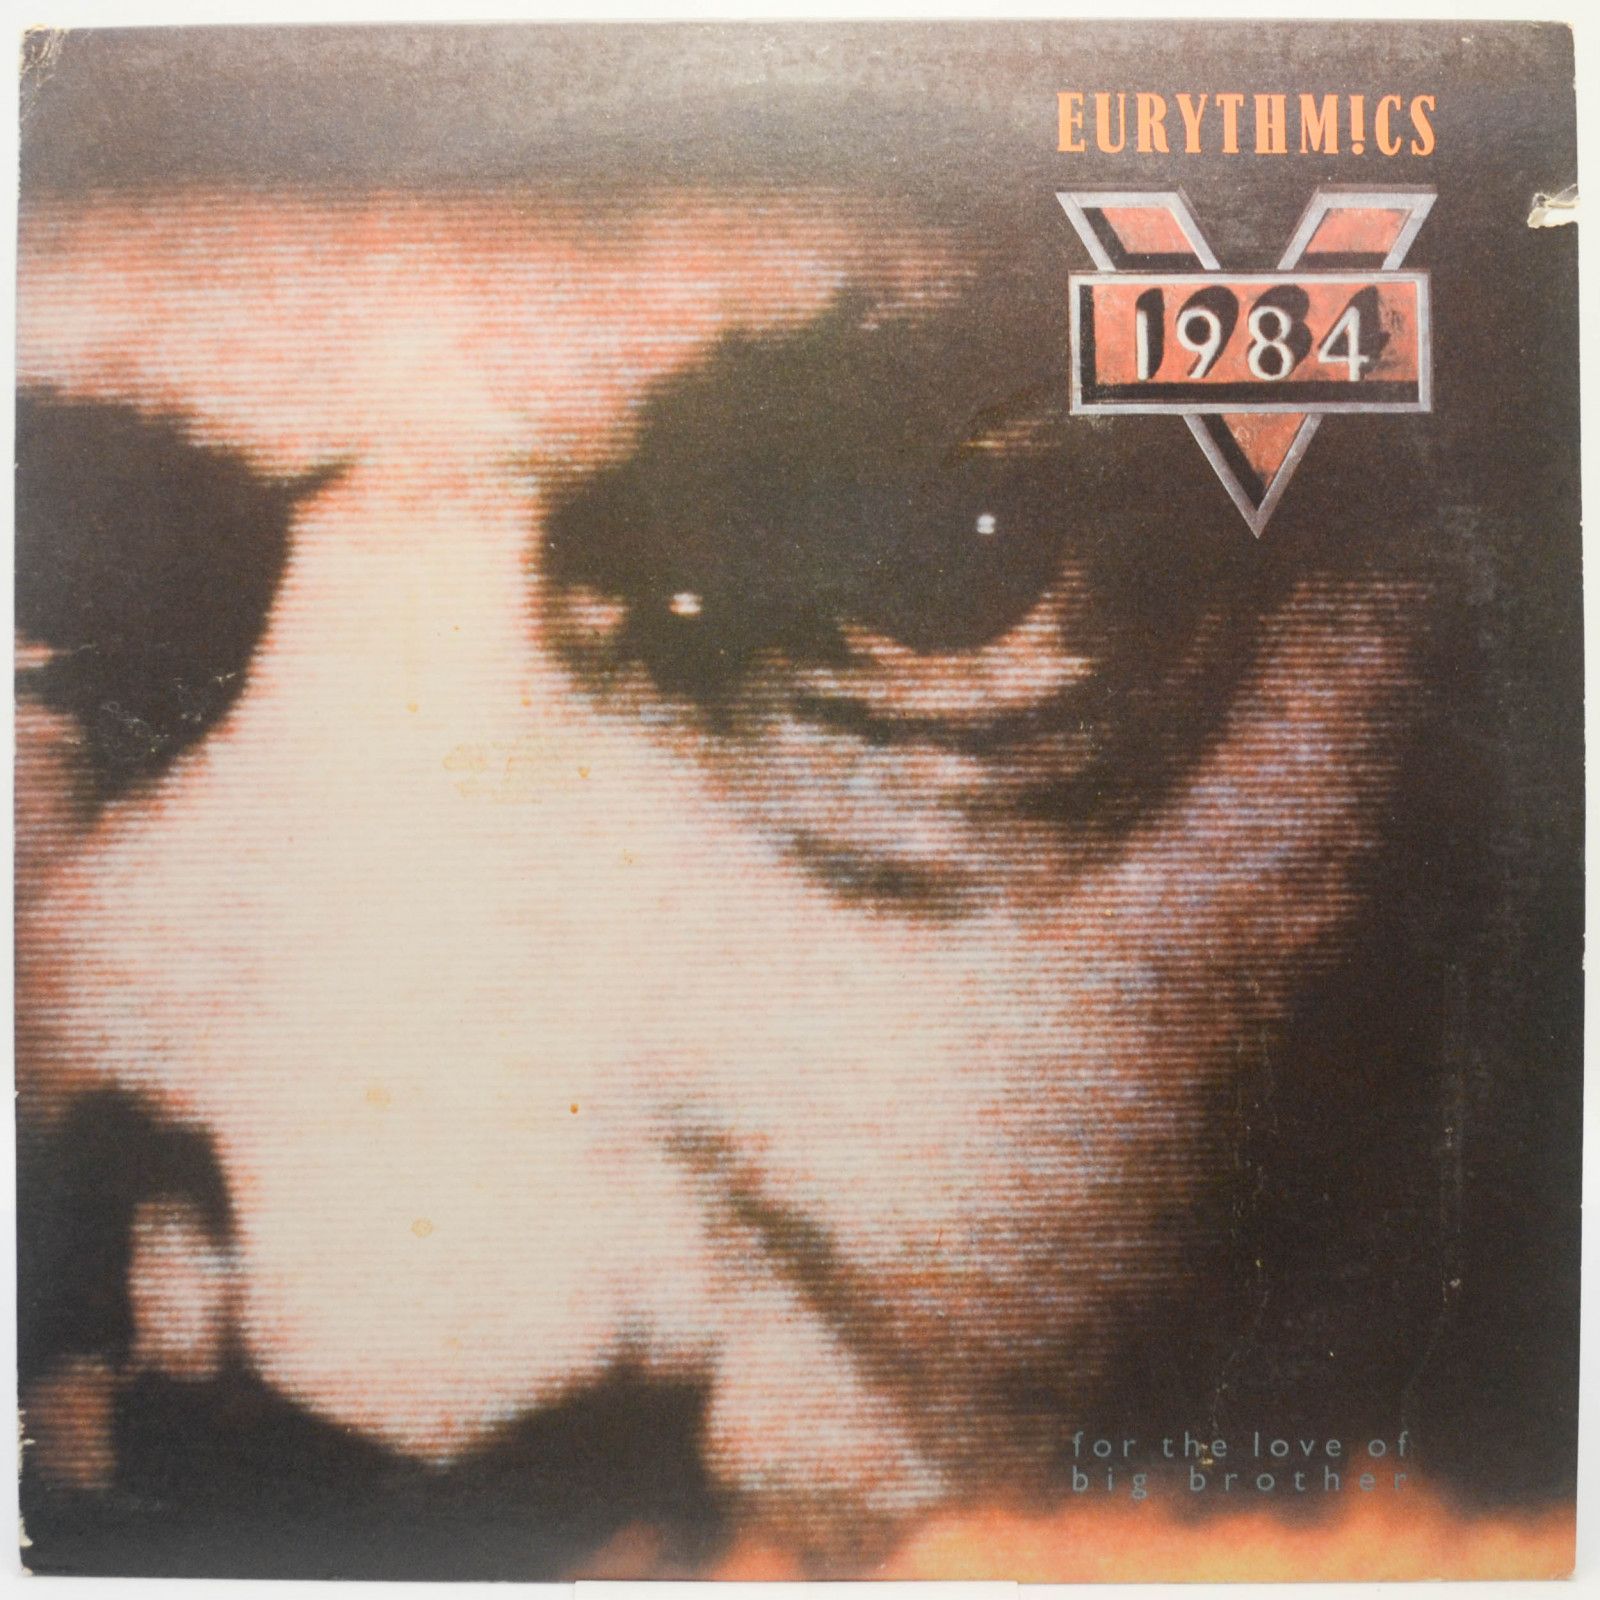 Eurythmics — 1984 (For The Love Of Big Brother) (USA), 1984